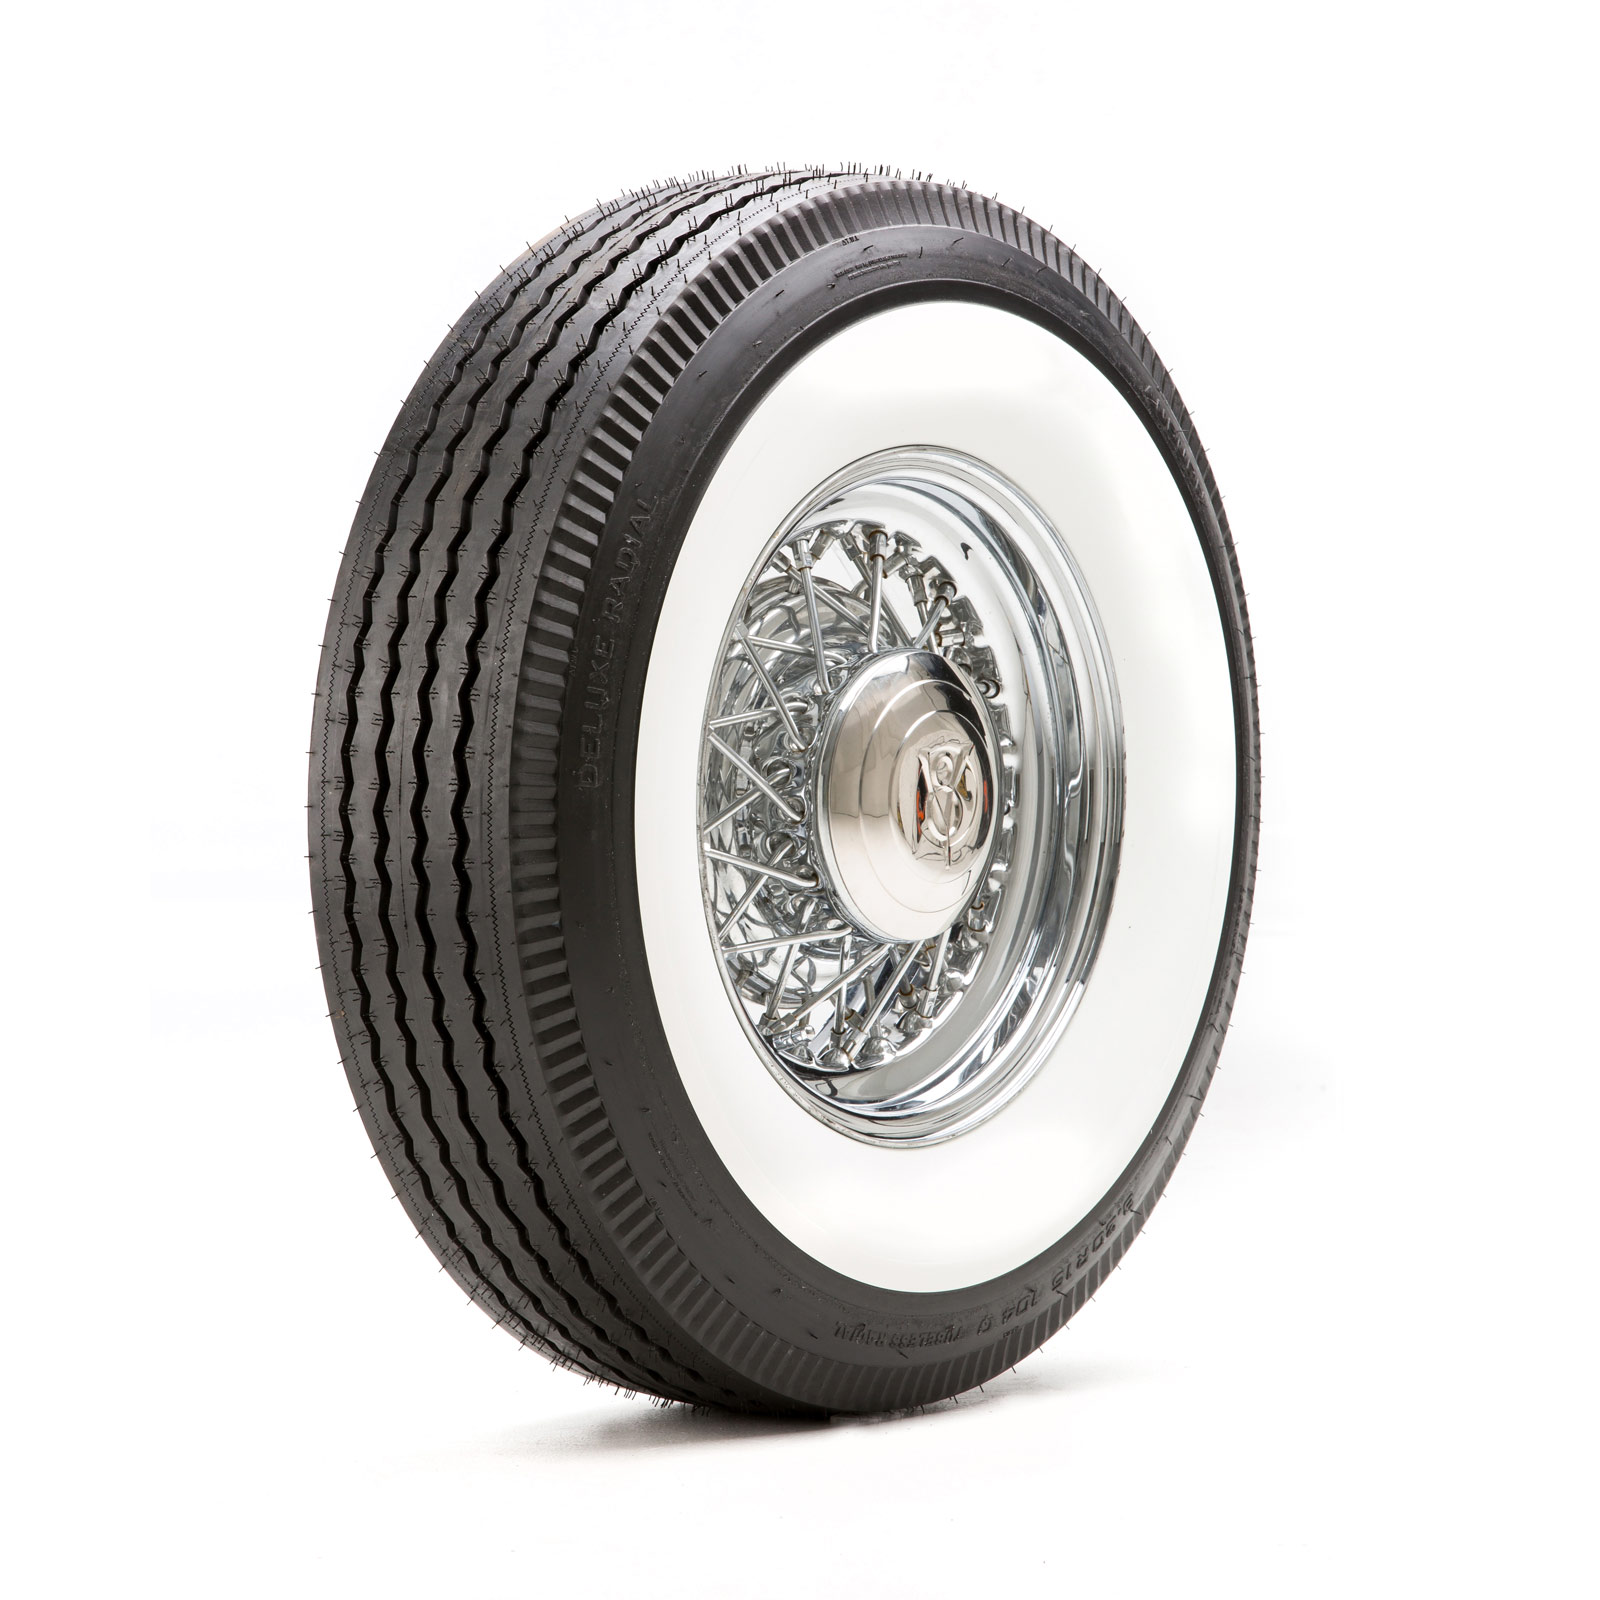 Installez des pneus pleins de 9 pouces - plus de crevaisons. modèle Solid  Tire CityZ 9.2 Inch Red Line